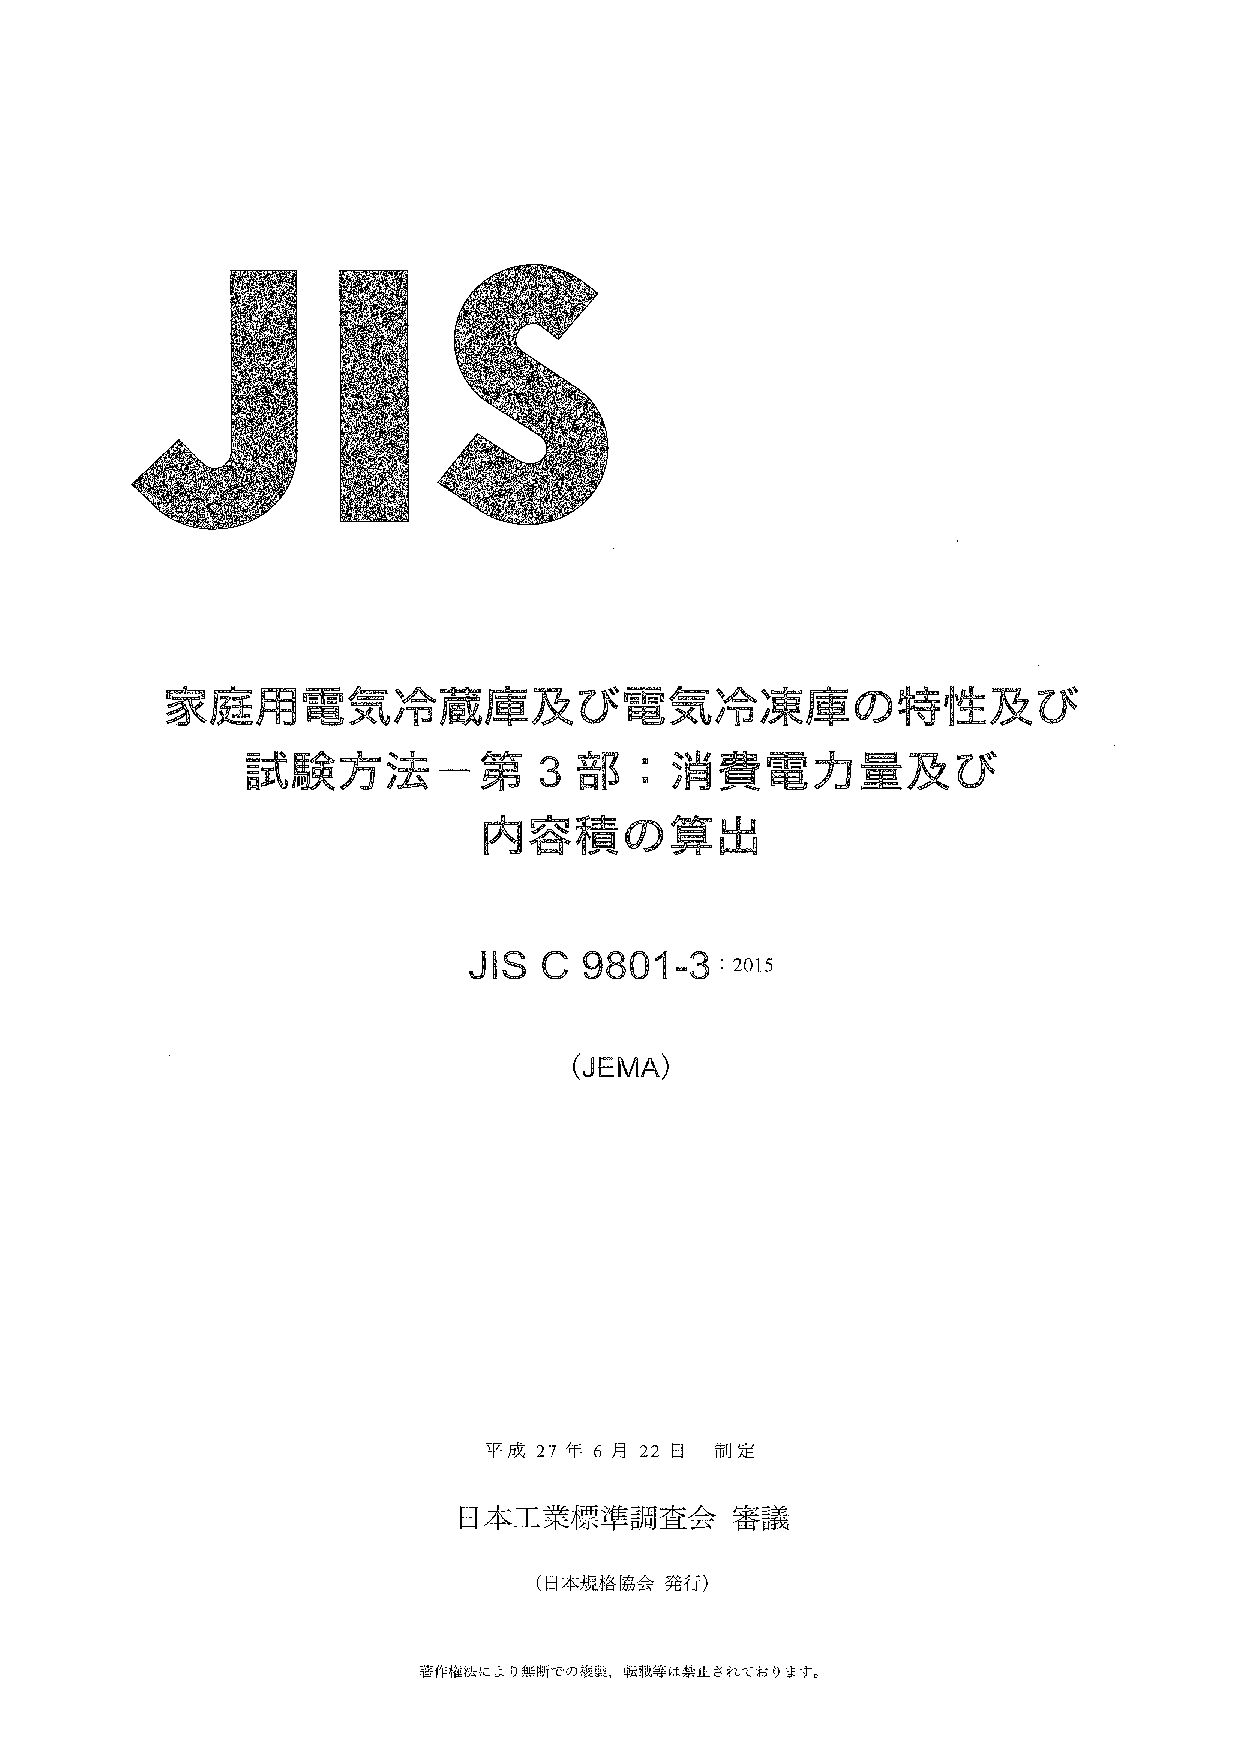 JIS C 9801-3:2015